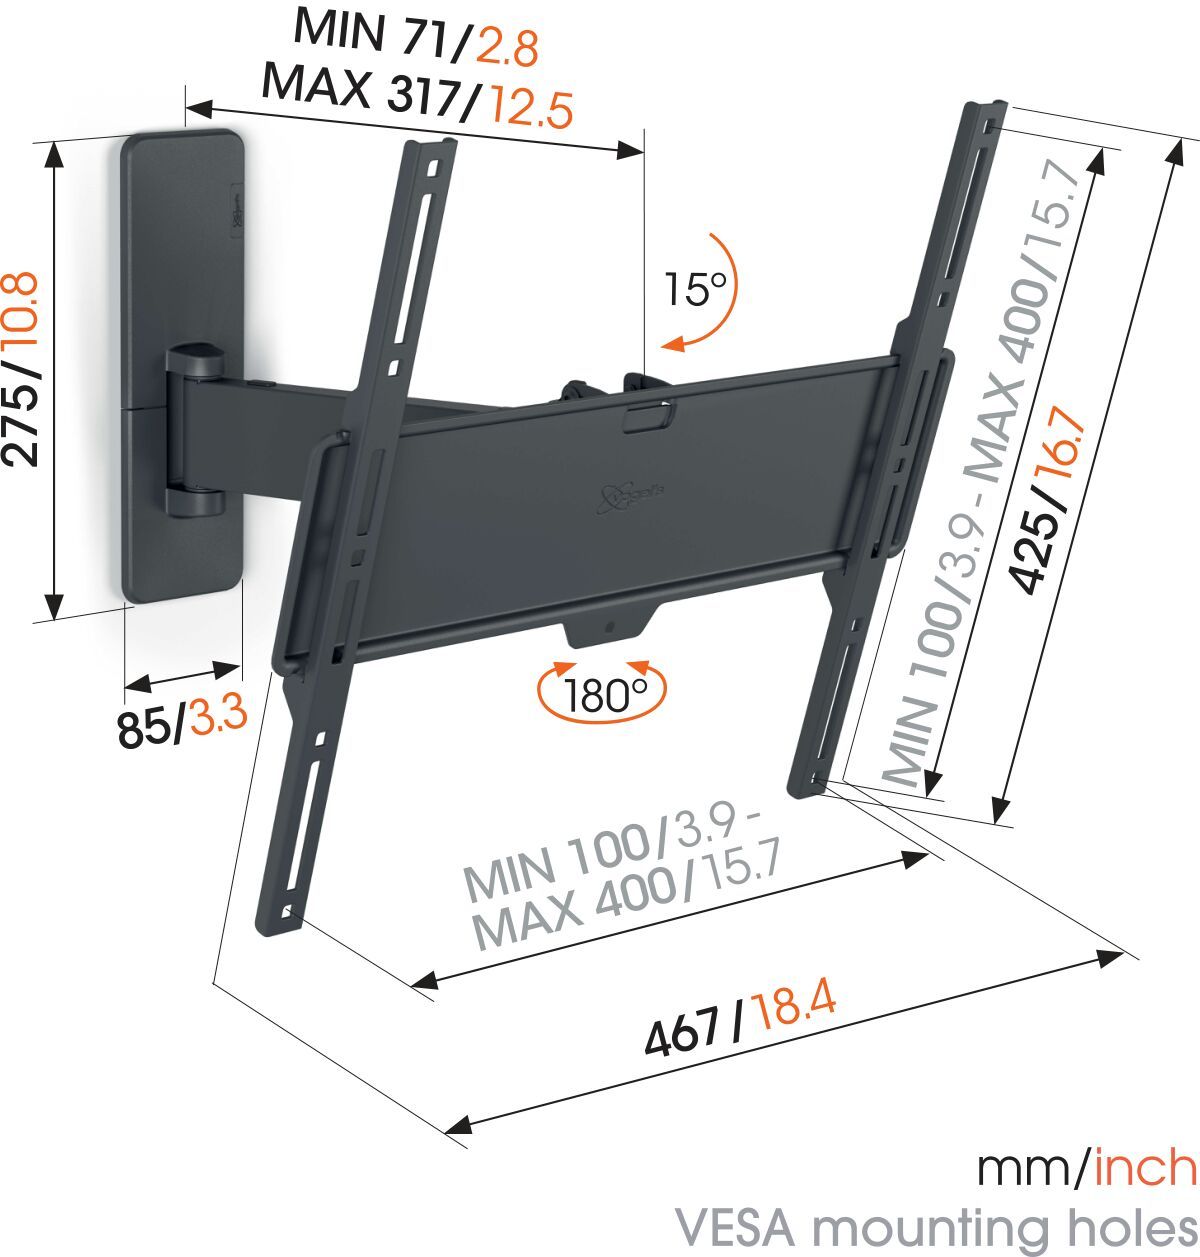 Vogel's TVM 1425 Schwenkbare TV-Wandhalterung - Geeignet für Fernseher von 32 bis 65 Zoll - Beweglich (bis zu 120°) schwenkbar - Bis zu 15° neigbar - Dimensions